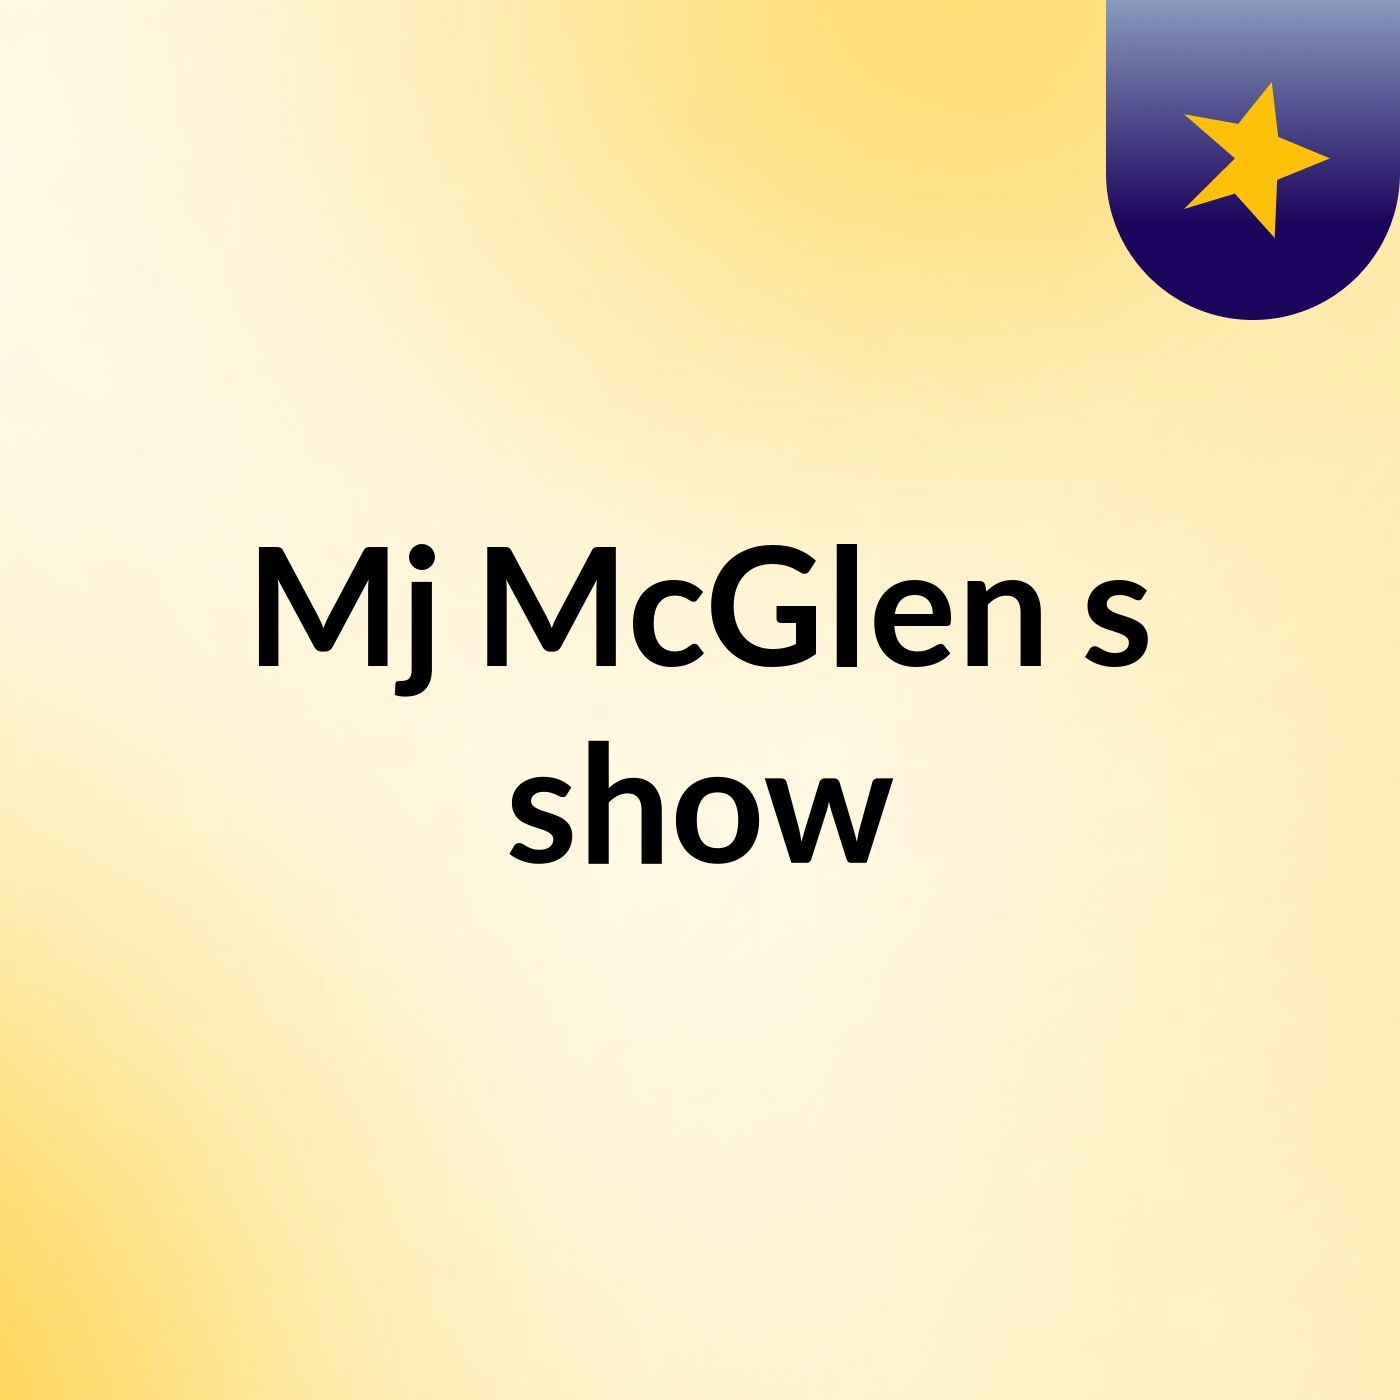 Episode 2 - Mj McGlen's show